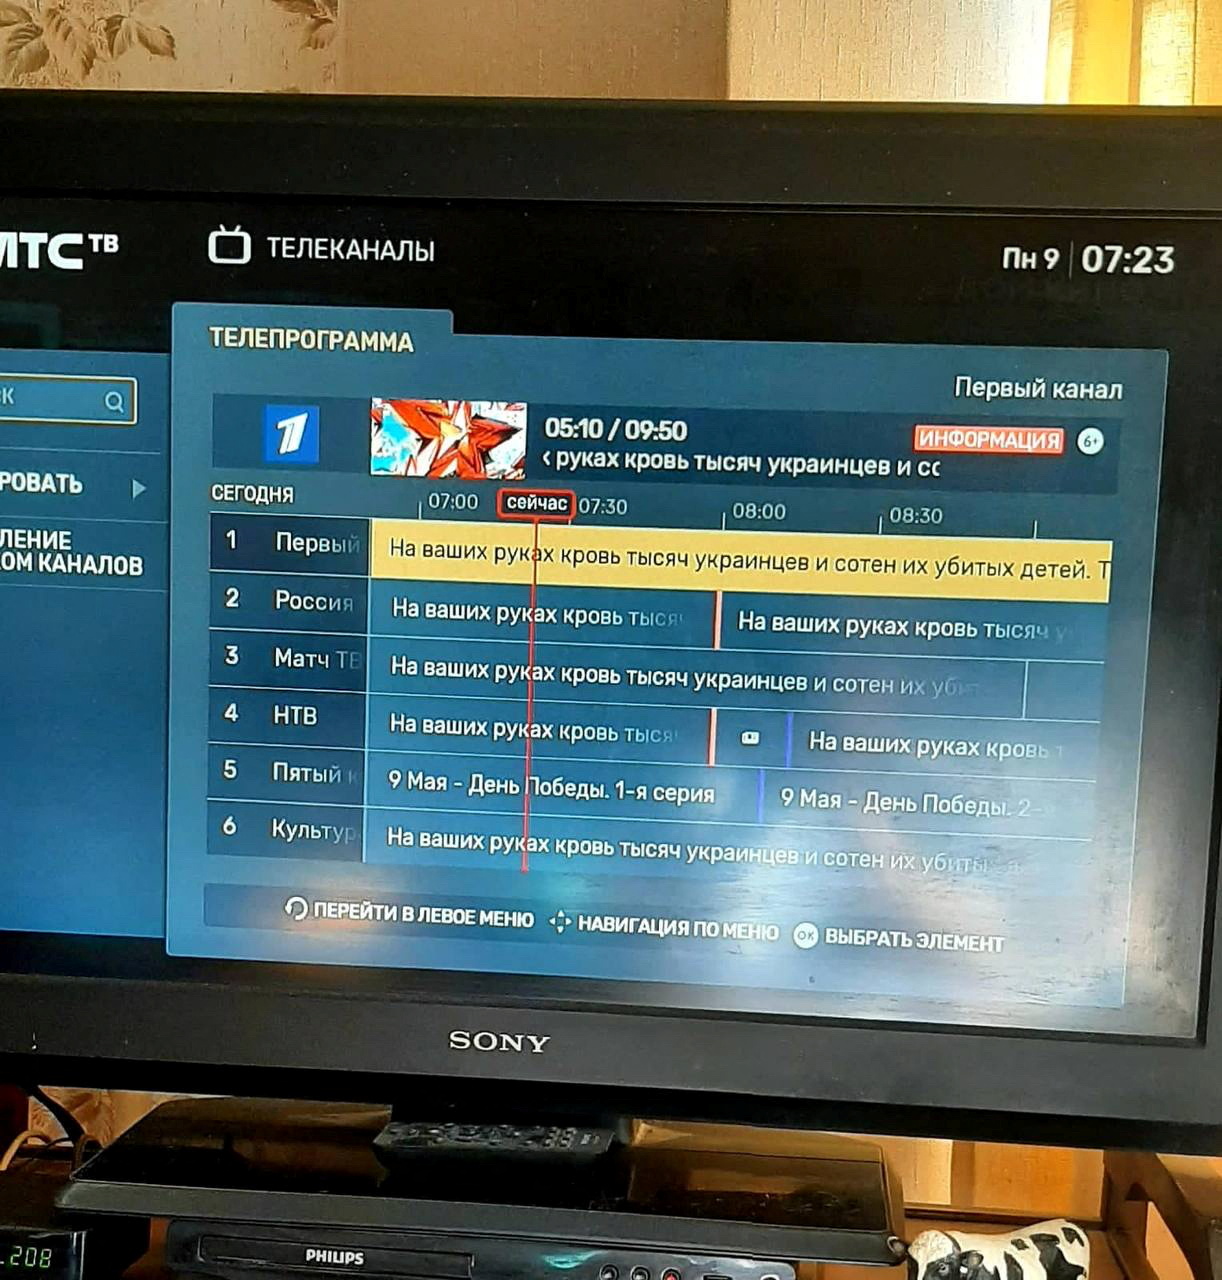 Smart TV hack in Russia